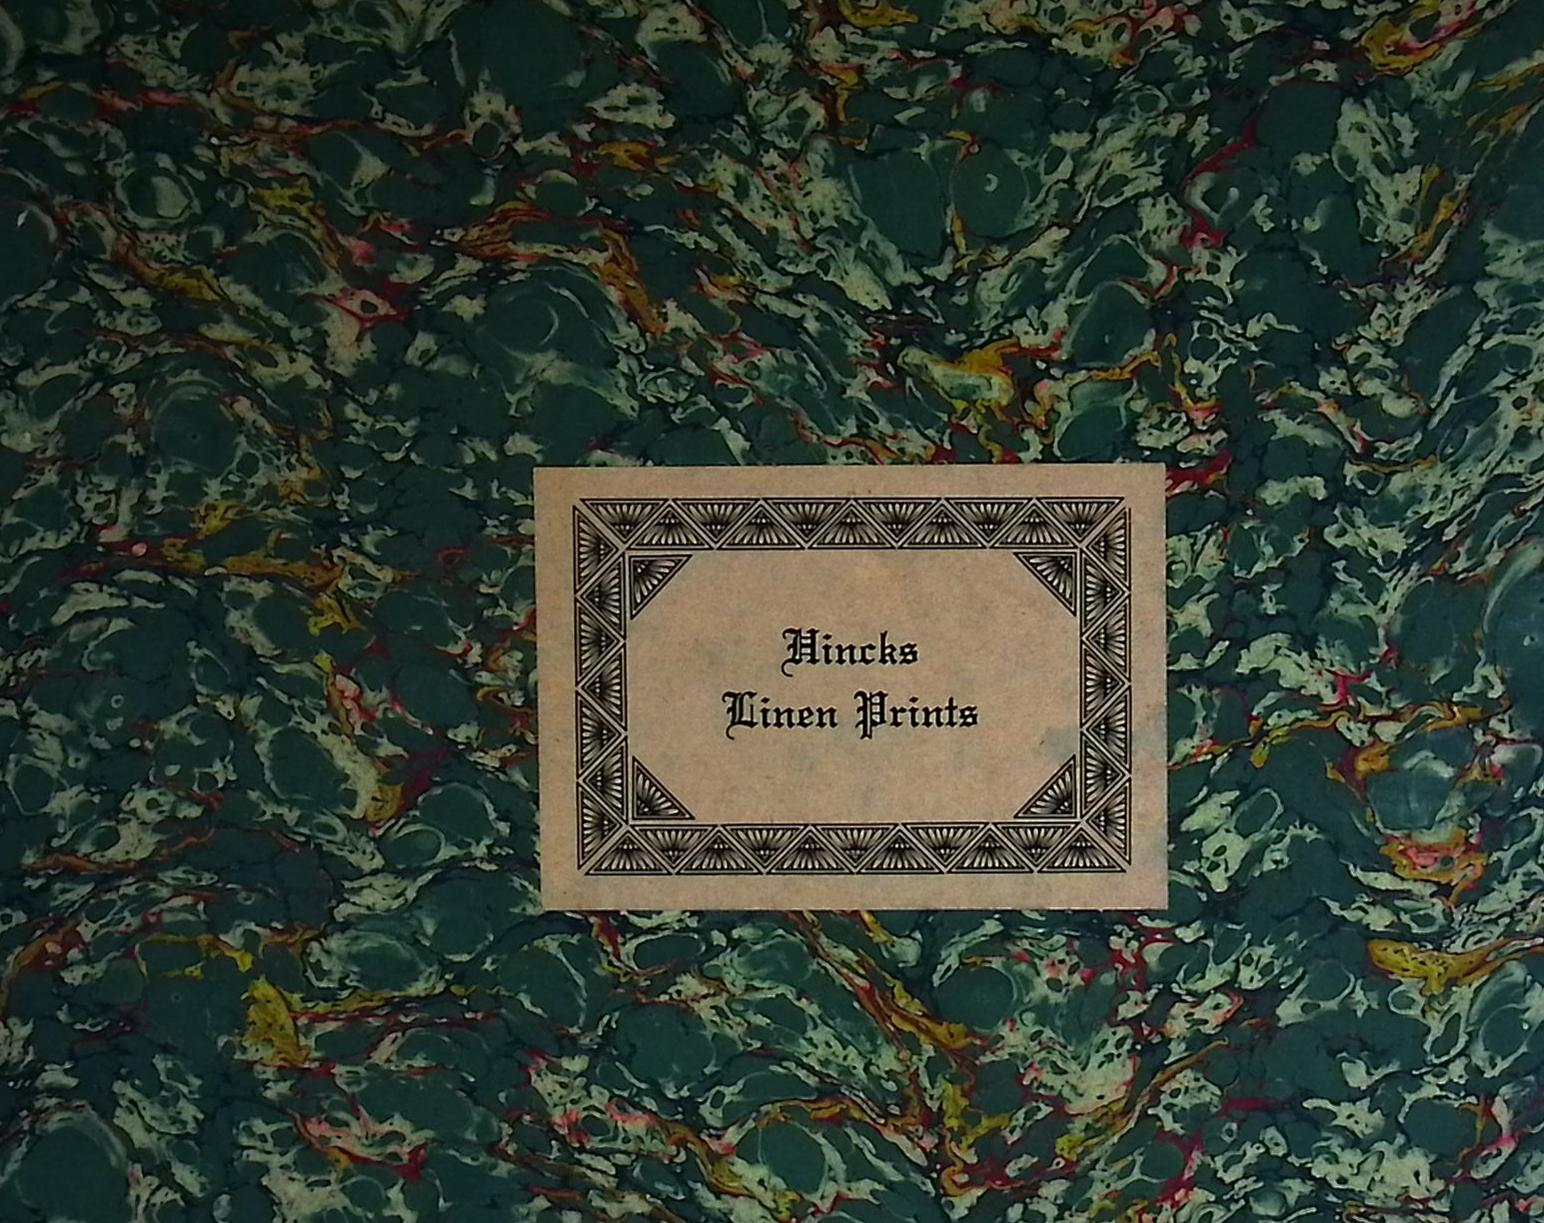 Hincks Linen Prints